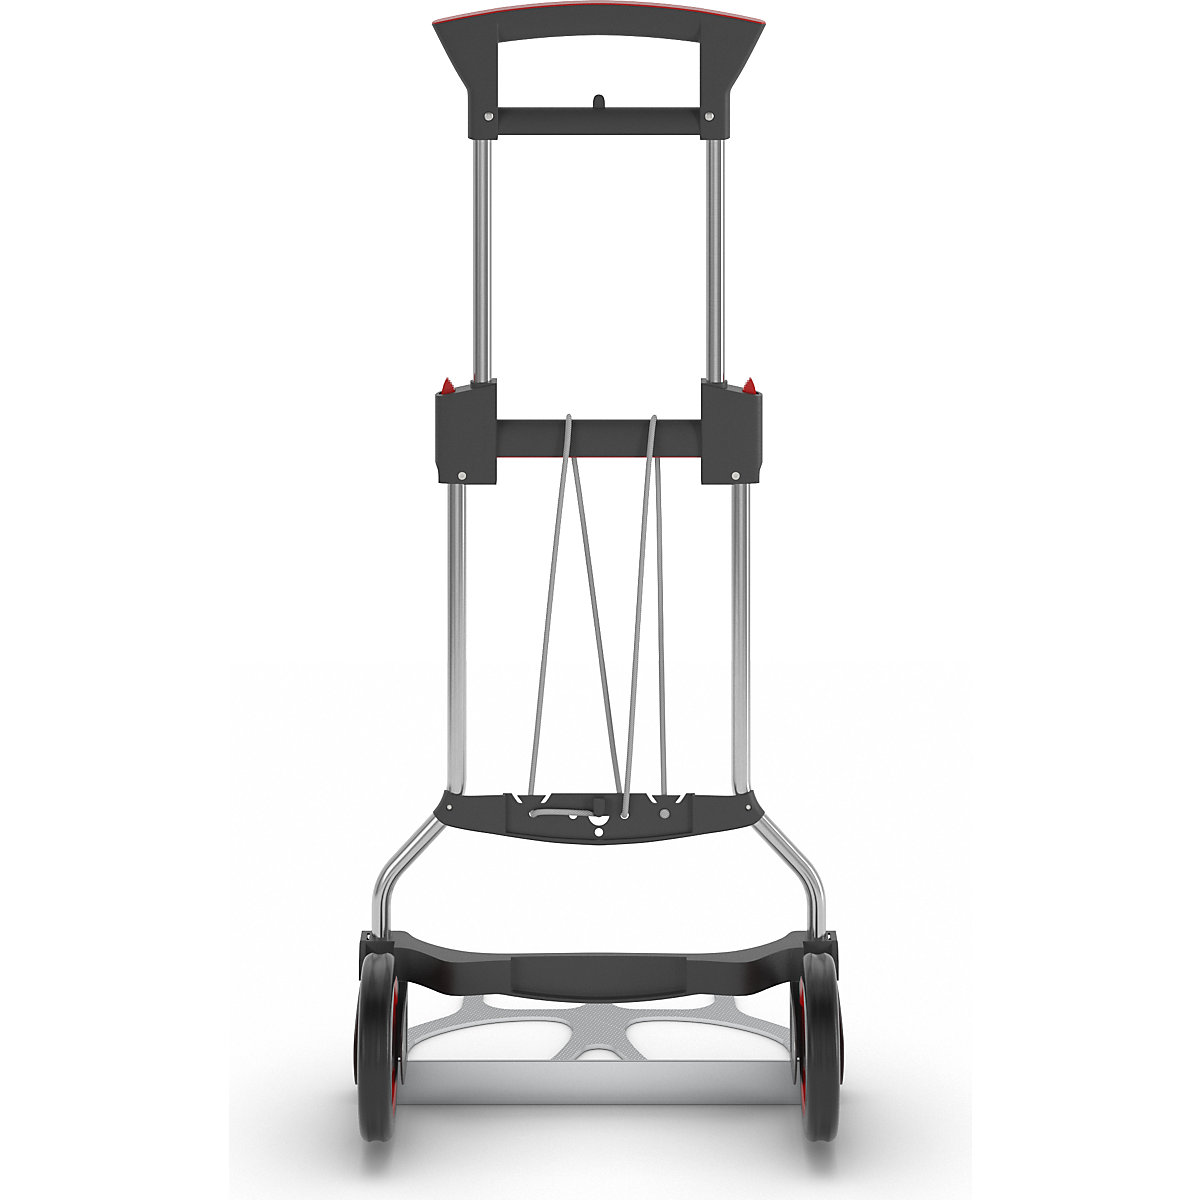 Profesionalni voziček za prevoz vreč, zložljiv – RuXXac (Slika izdelka 4)-3